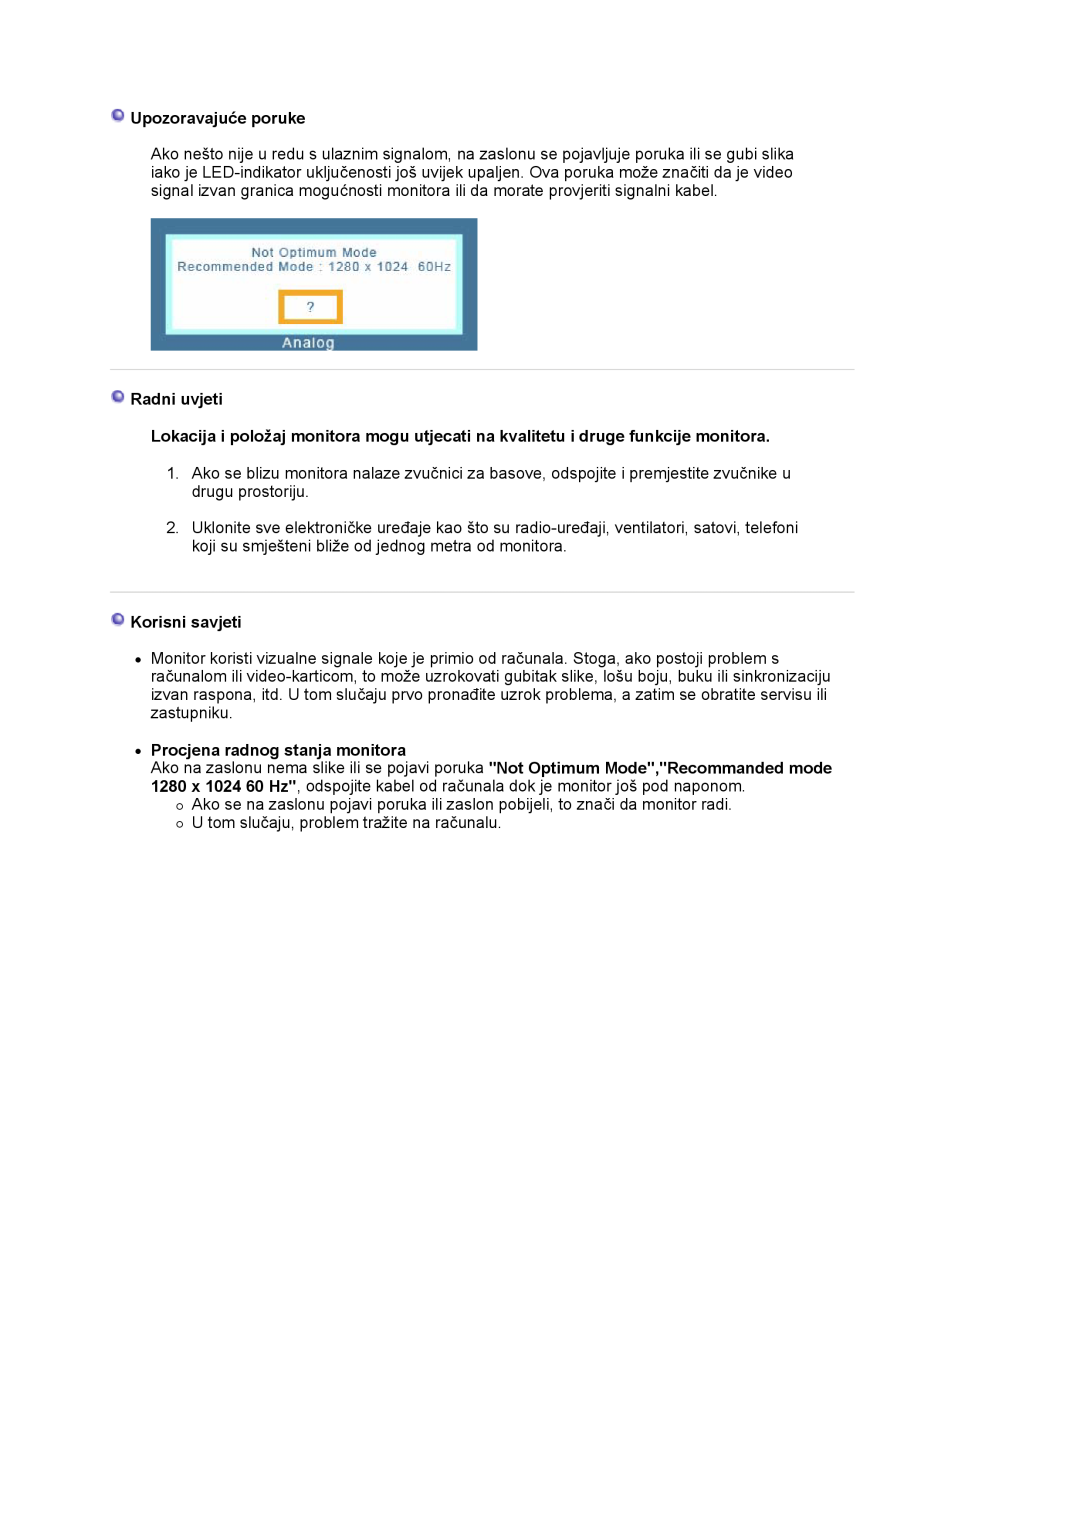 Samsung LS17MJVKS/EDC manual Upozoravajuće poruke, Radni uvjeti, Korisni savjeti, z Procjena radnog stanja monitora 